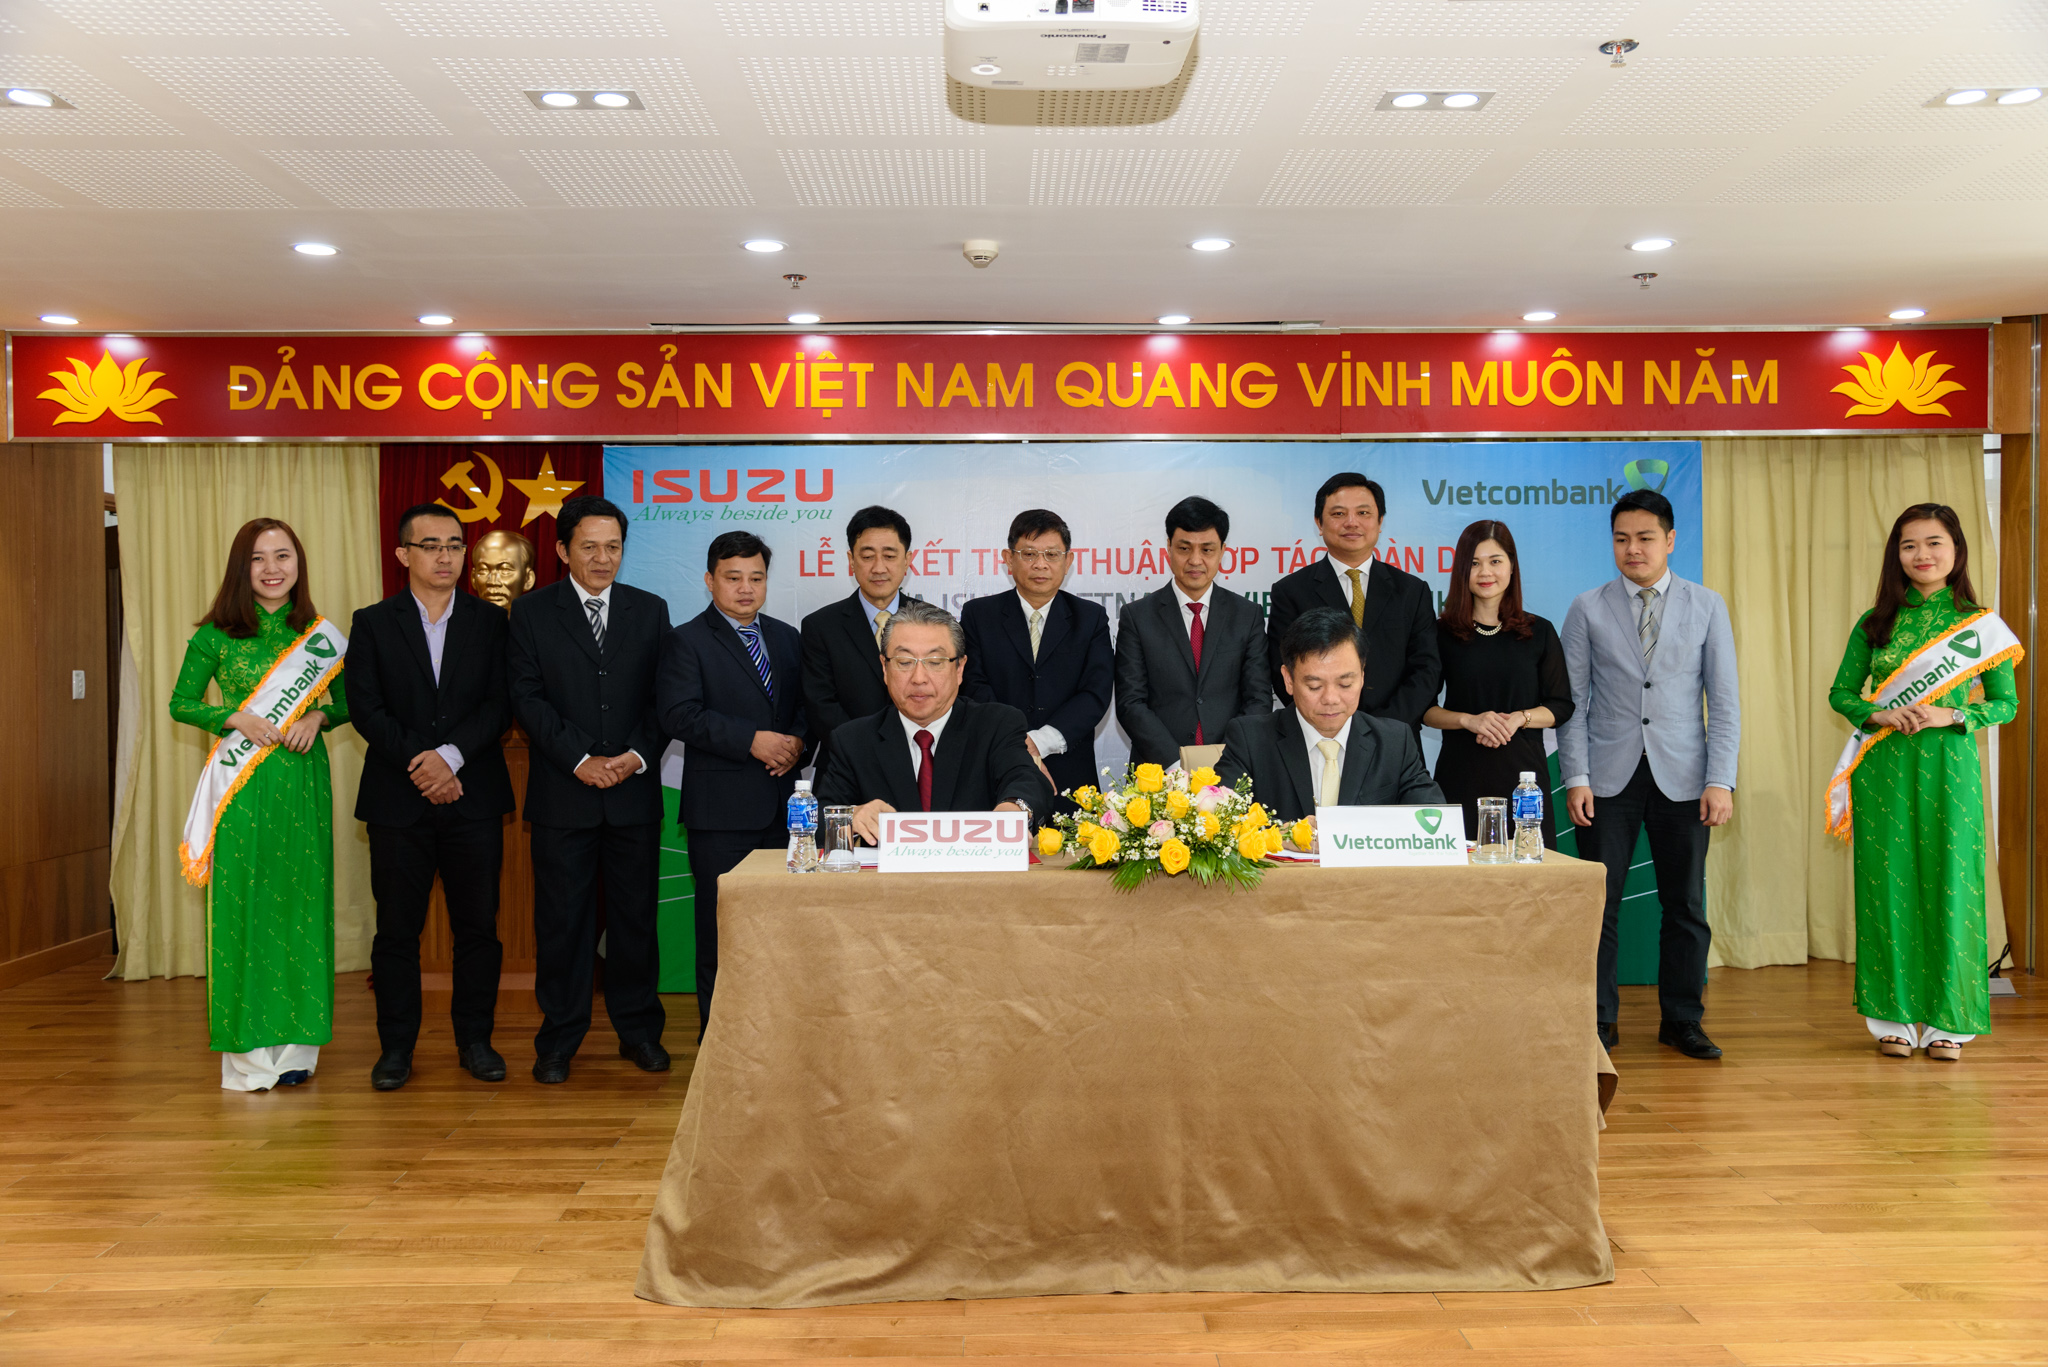 Đại diện lãnh đạo của Isuzu Việt Nam & Vietcombank ký kết thỏa thuận hợp tác toàn diện (Nguồn ảnh: Vietcombank)